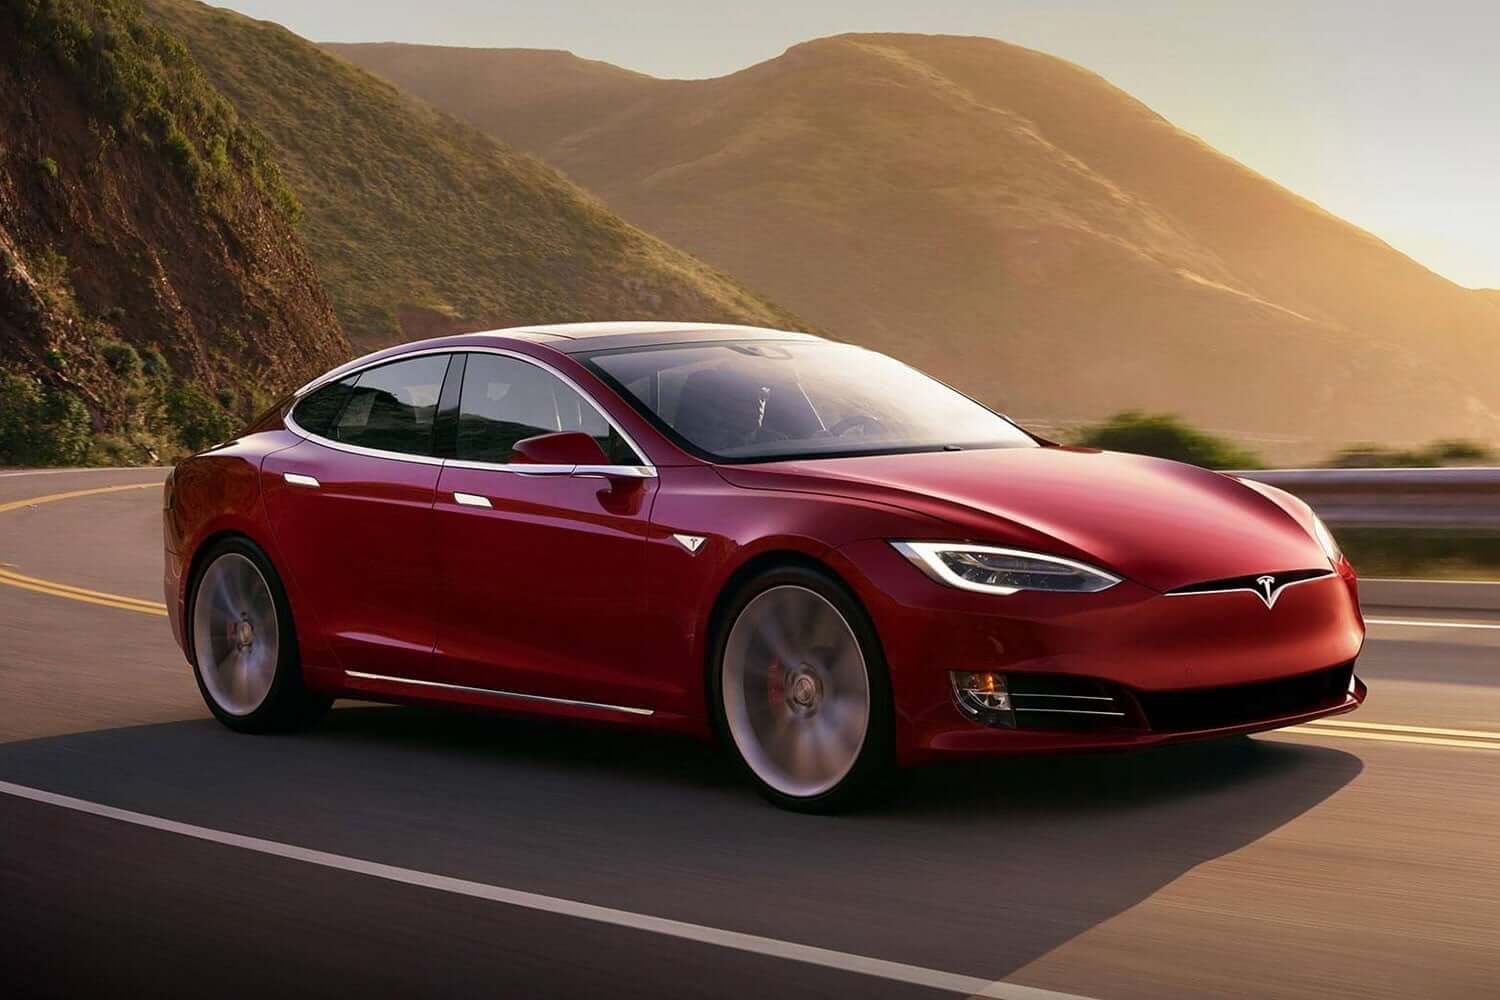 Ingeniører har funnet en måte å gjøre en Tesla dobbelt så bra